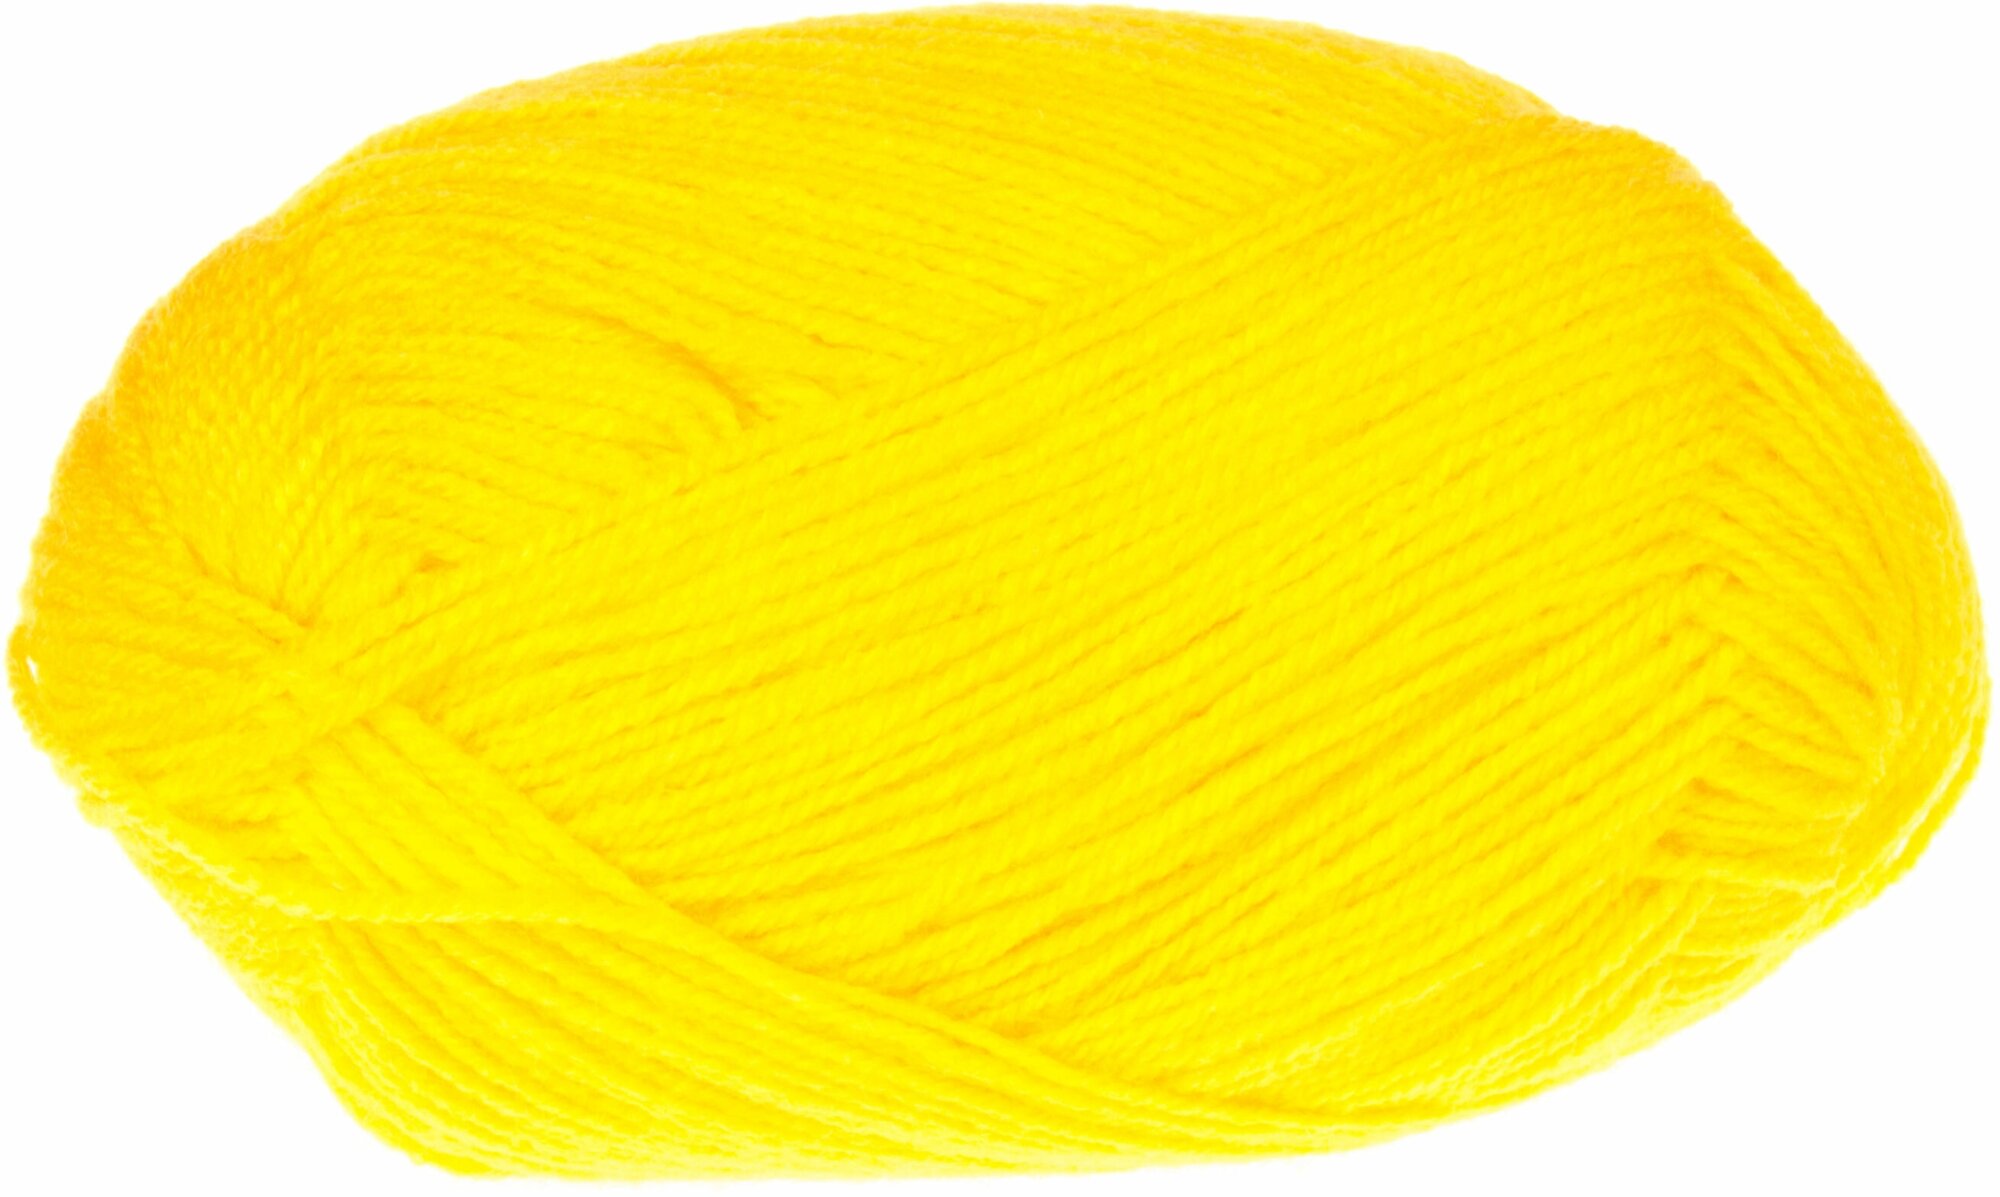 Пряжа Пехорка Детская новинка желток (12), 100%высокообъемный акрил, 200м, 50г, 3шт